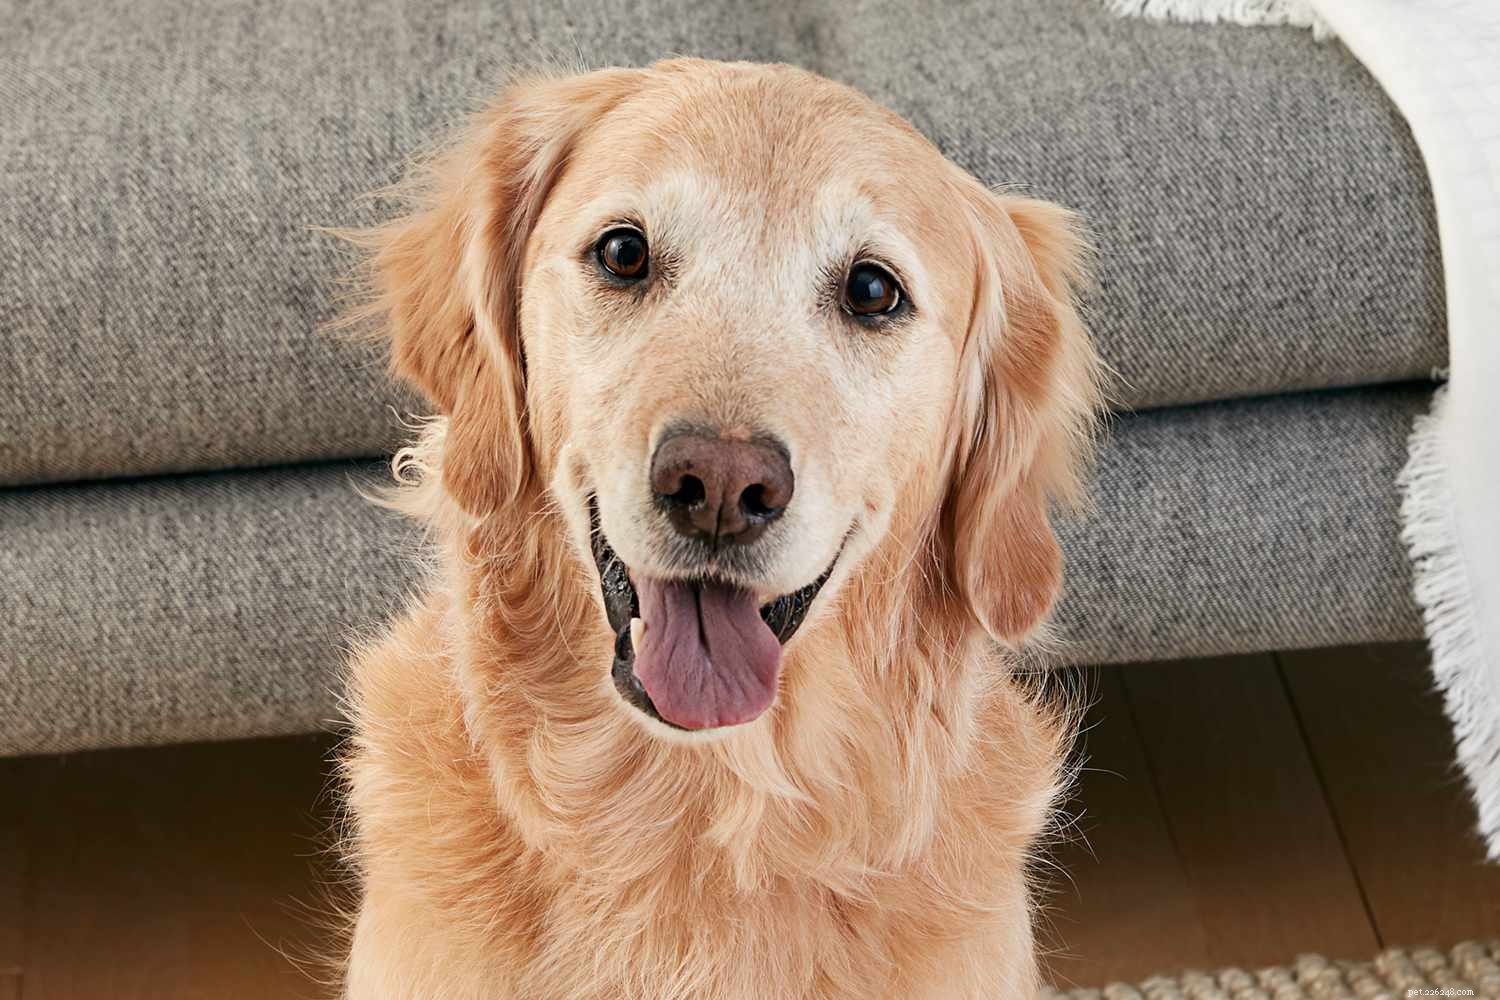 Golden Retriever:caratteristiche e cure della razza canina